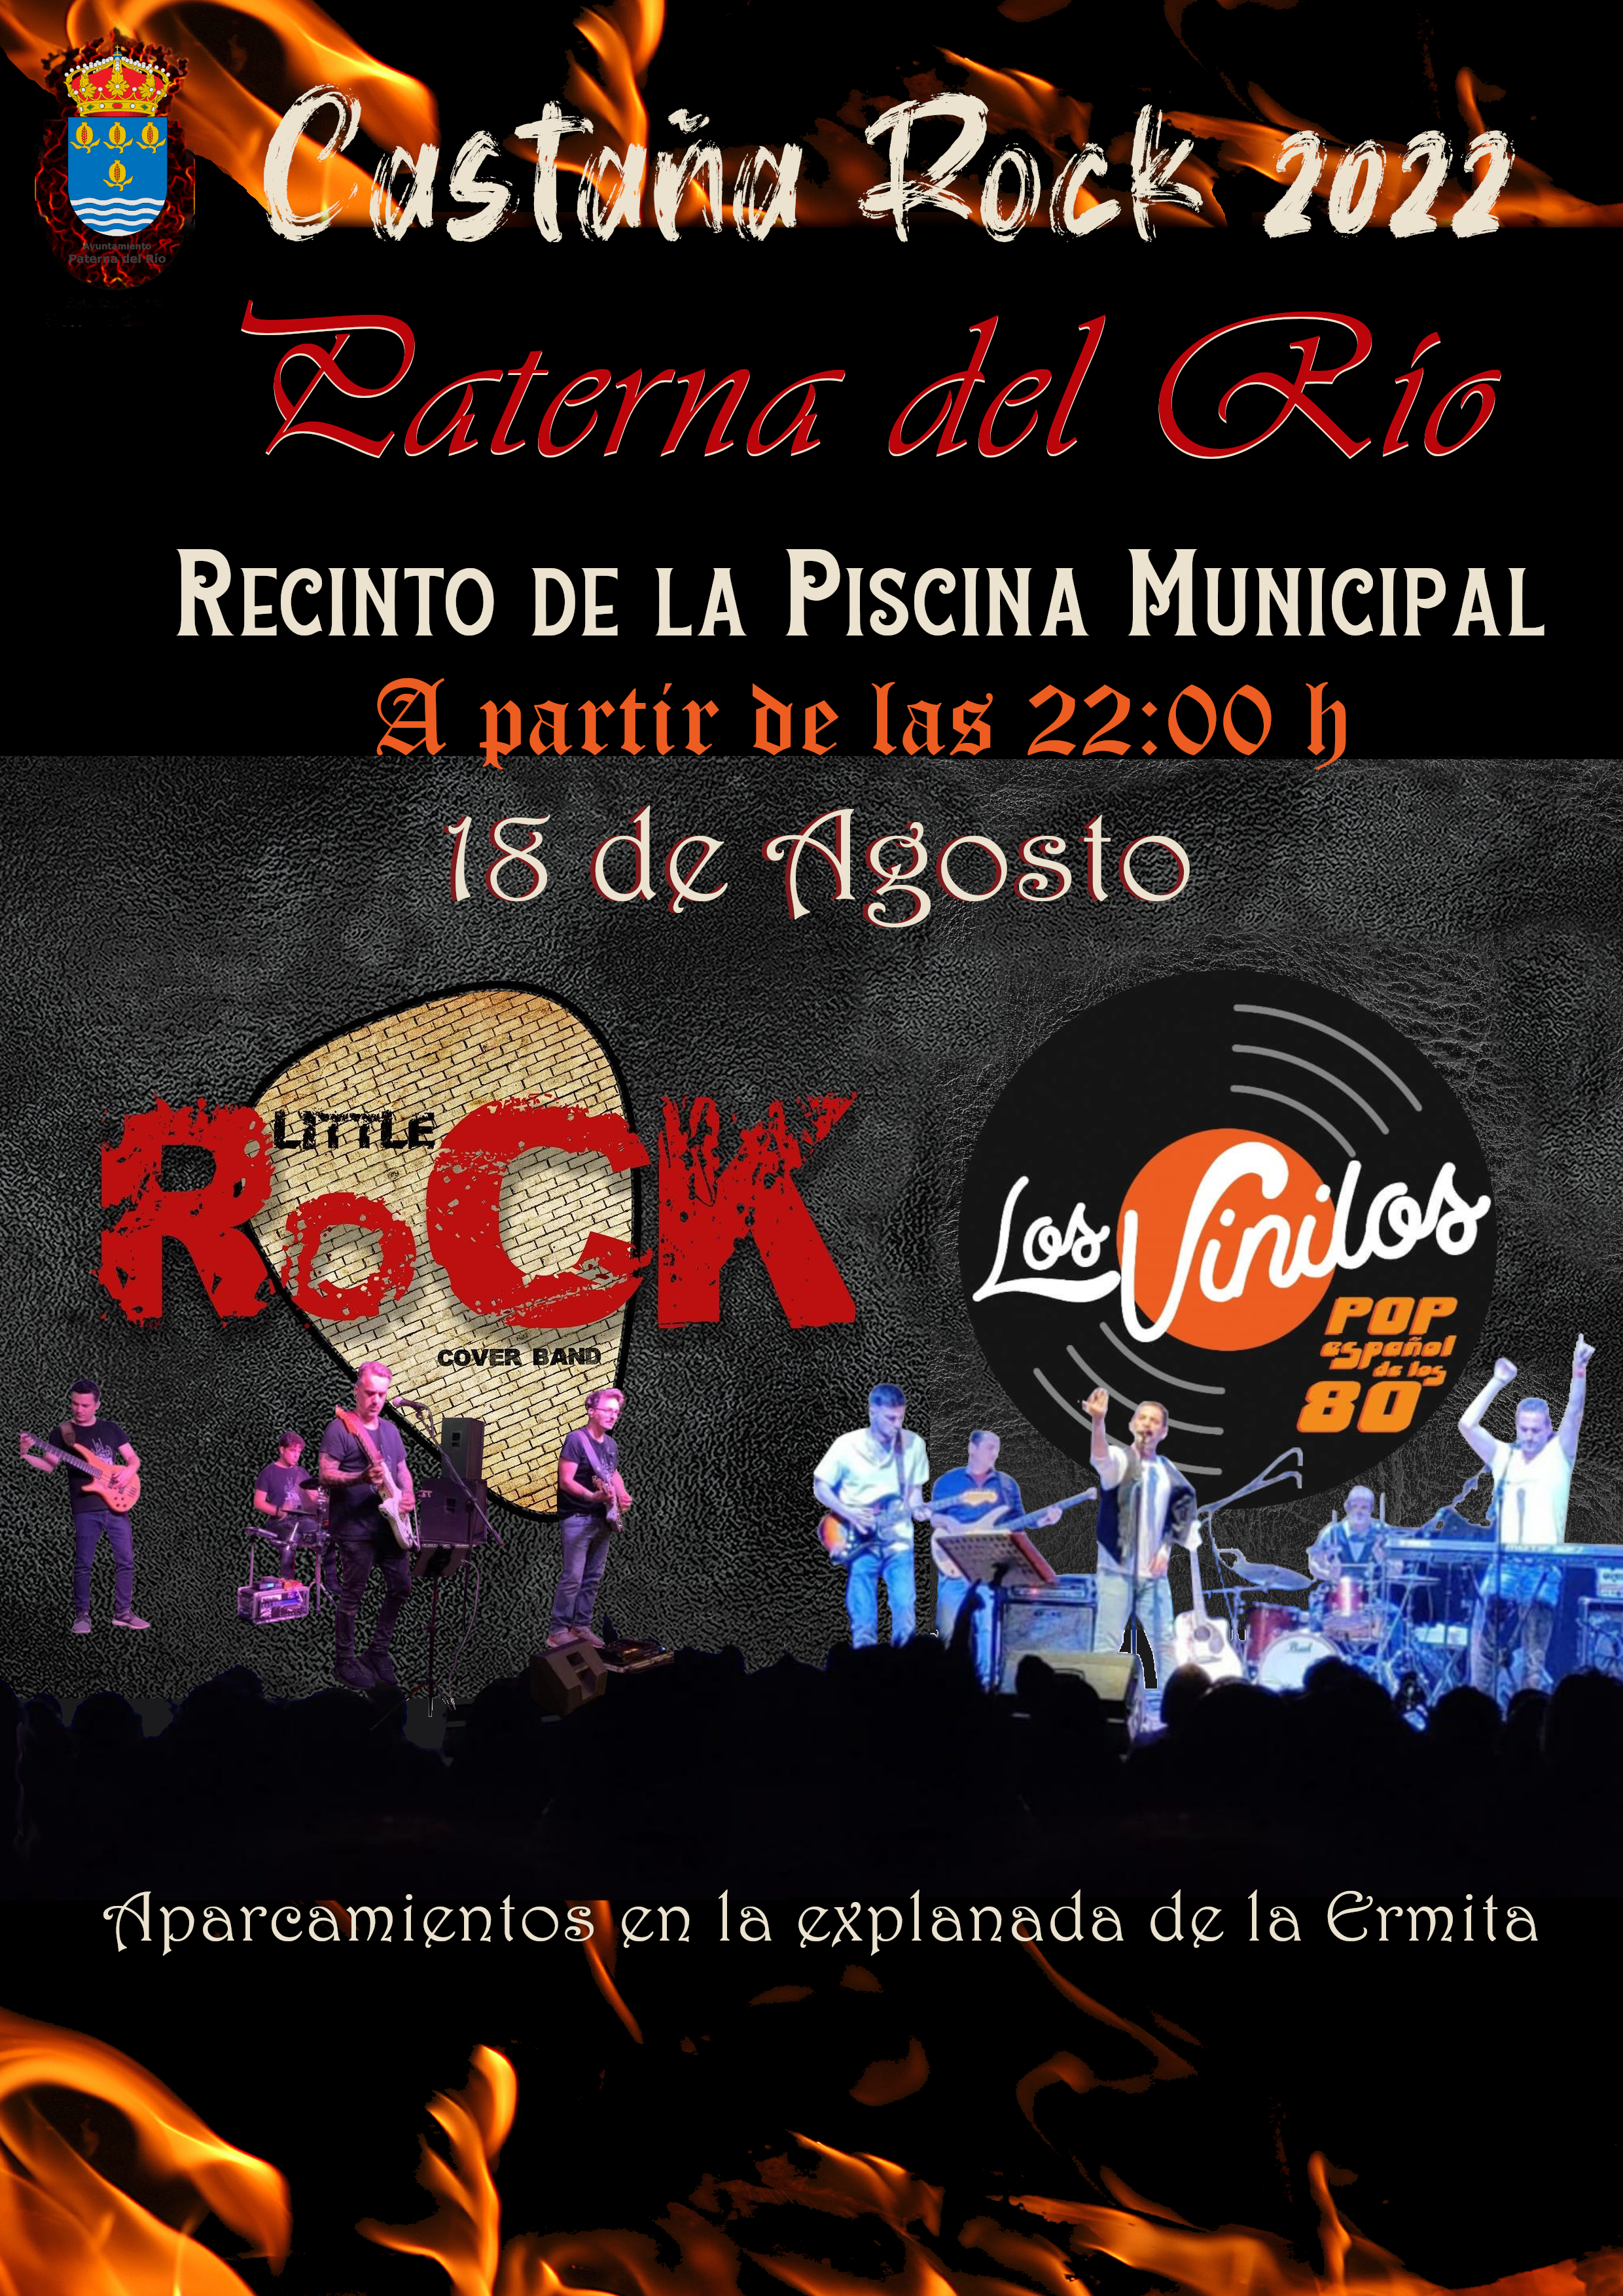 Cartel publicidad Castaña Rock